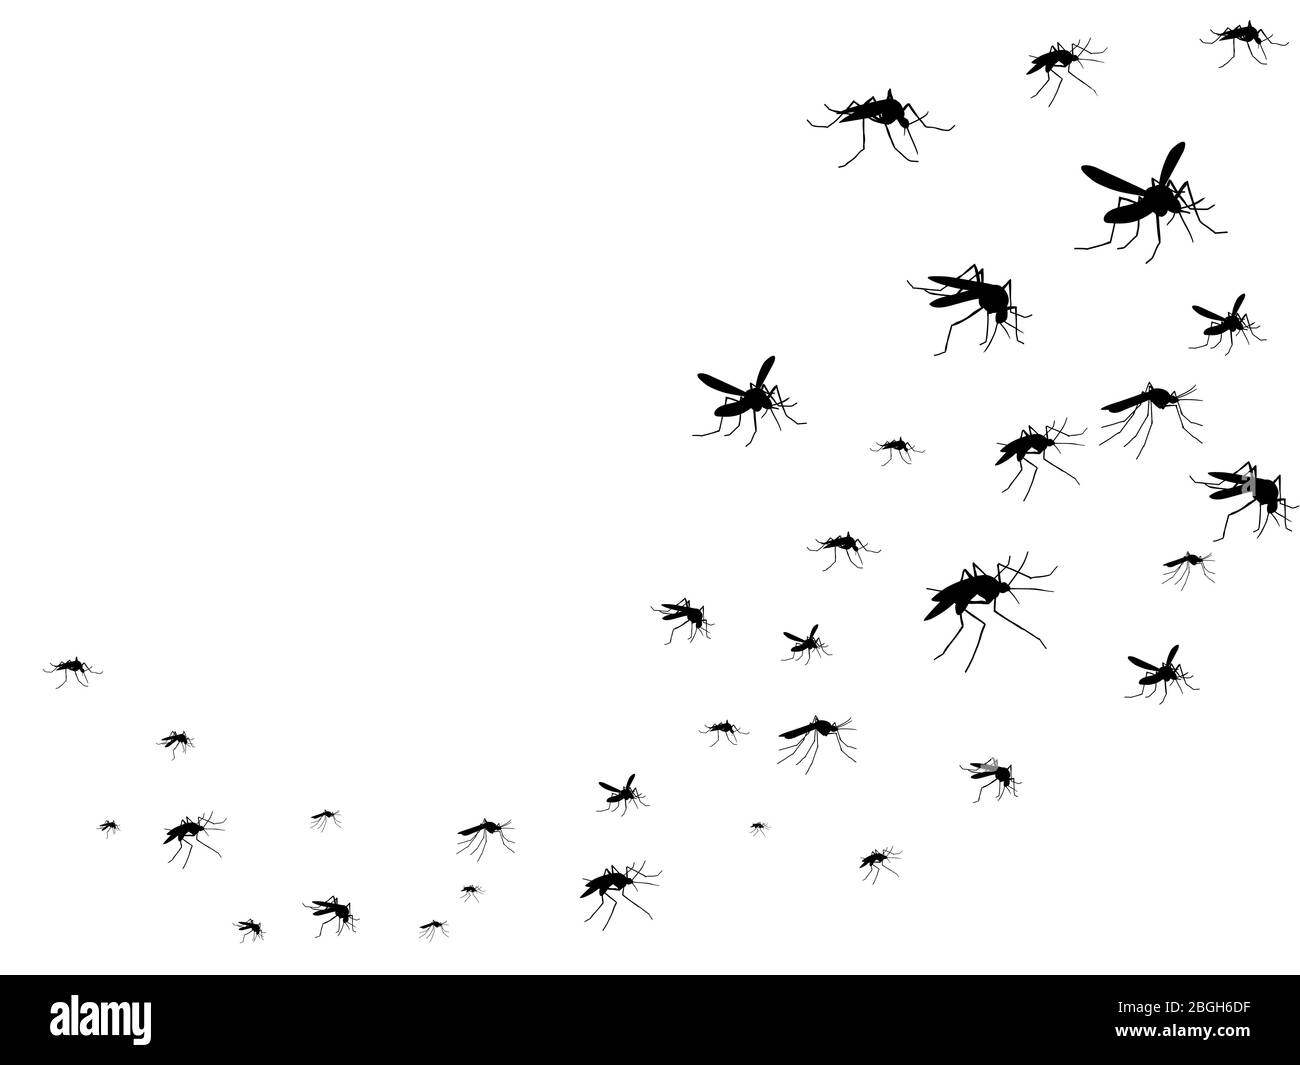 Fliegende Mücken schwarze Silhouette isoliert. Insektenscharen in der Luft. Viren und Krankheiten verbreiten medizinische Vektor-Konzept. Insektenmücke schwarze Silhouette, Mücke und Schädlingsillustration Stock Vektor